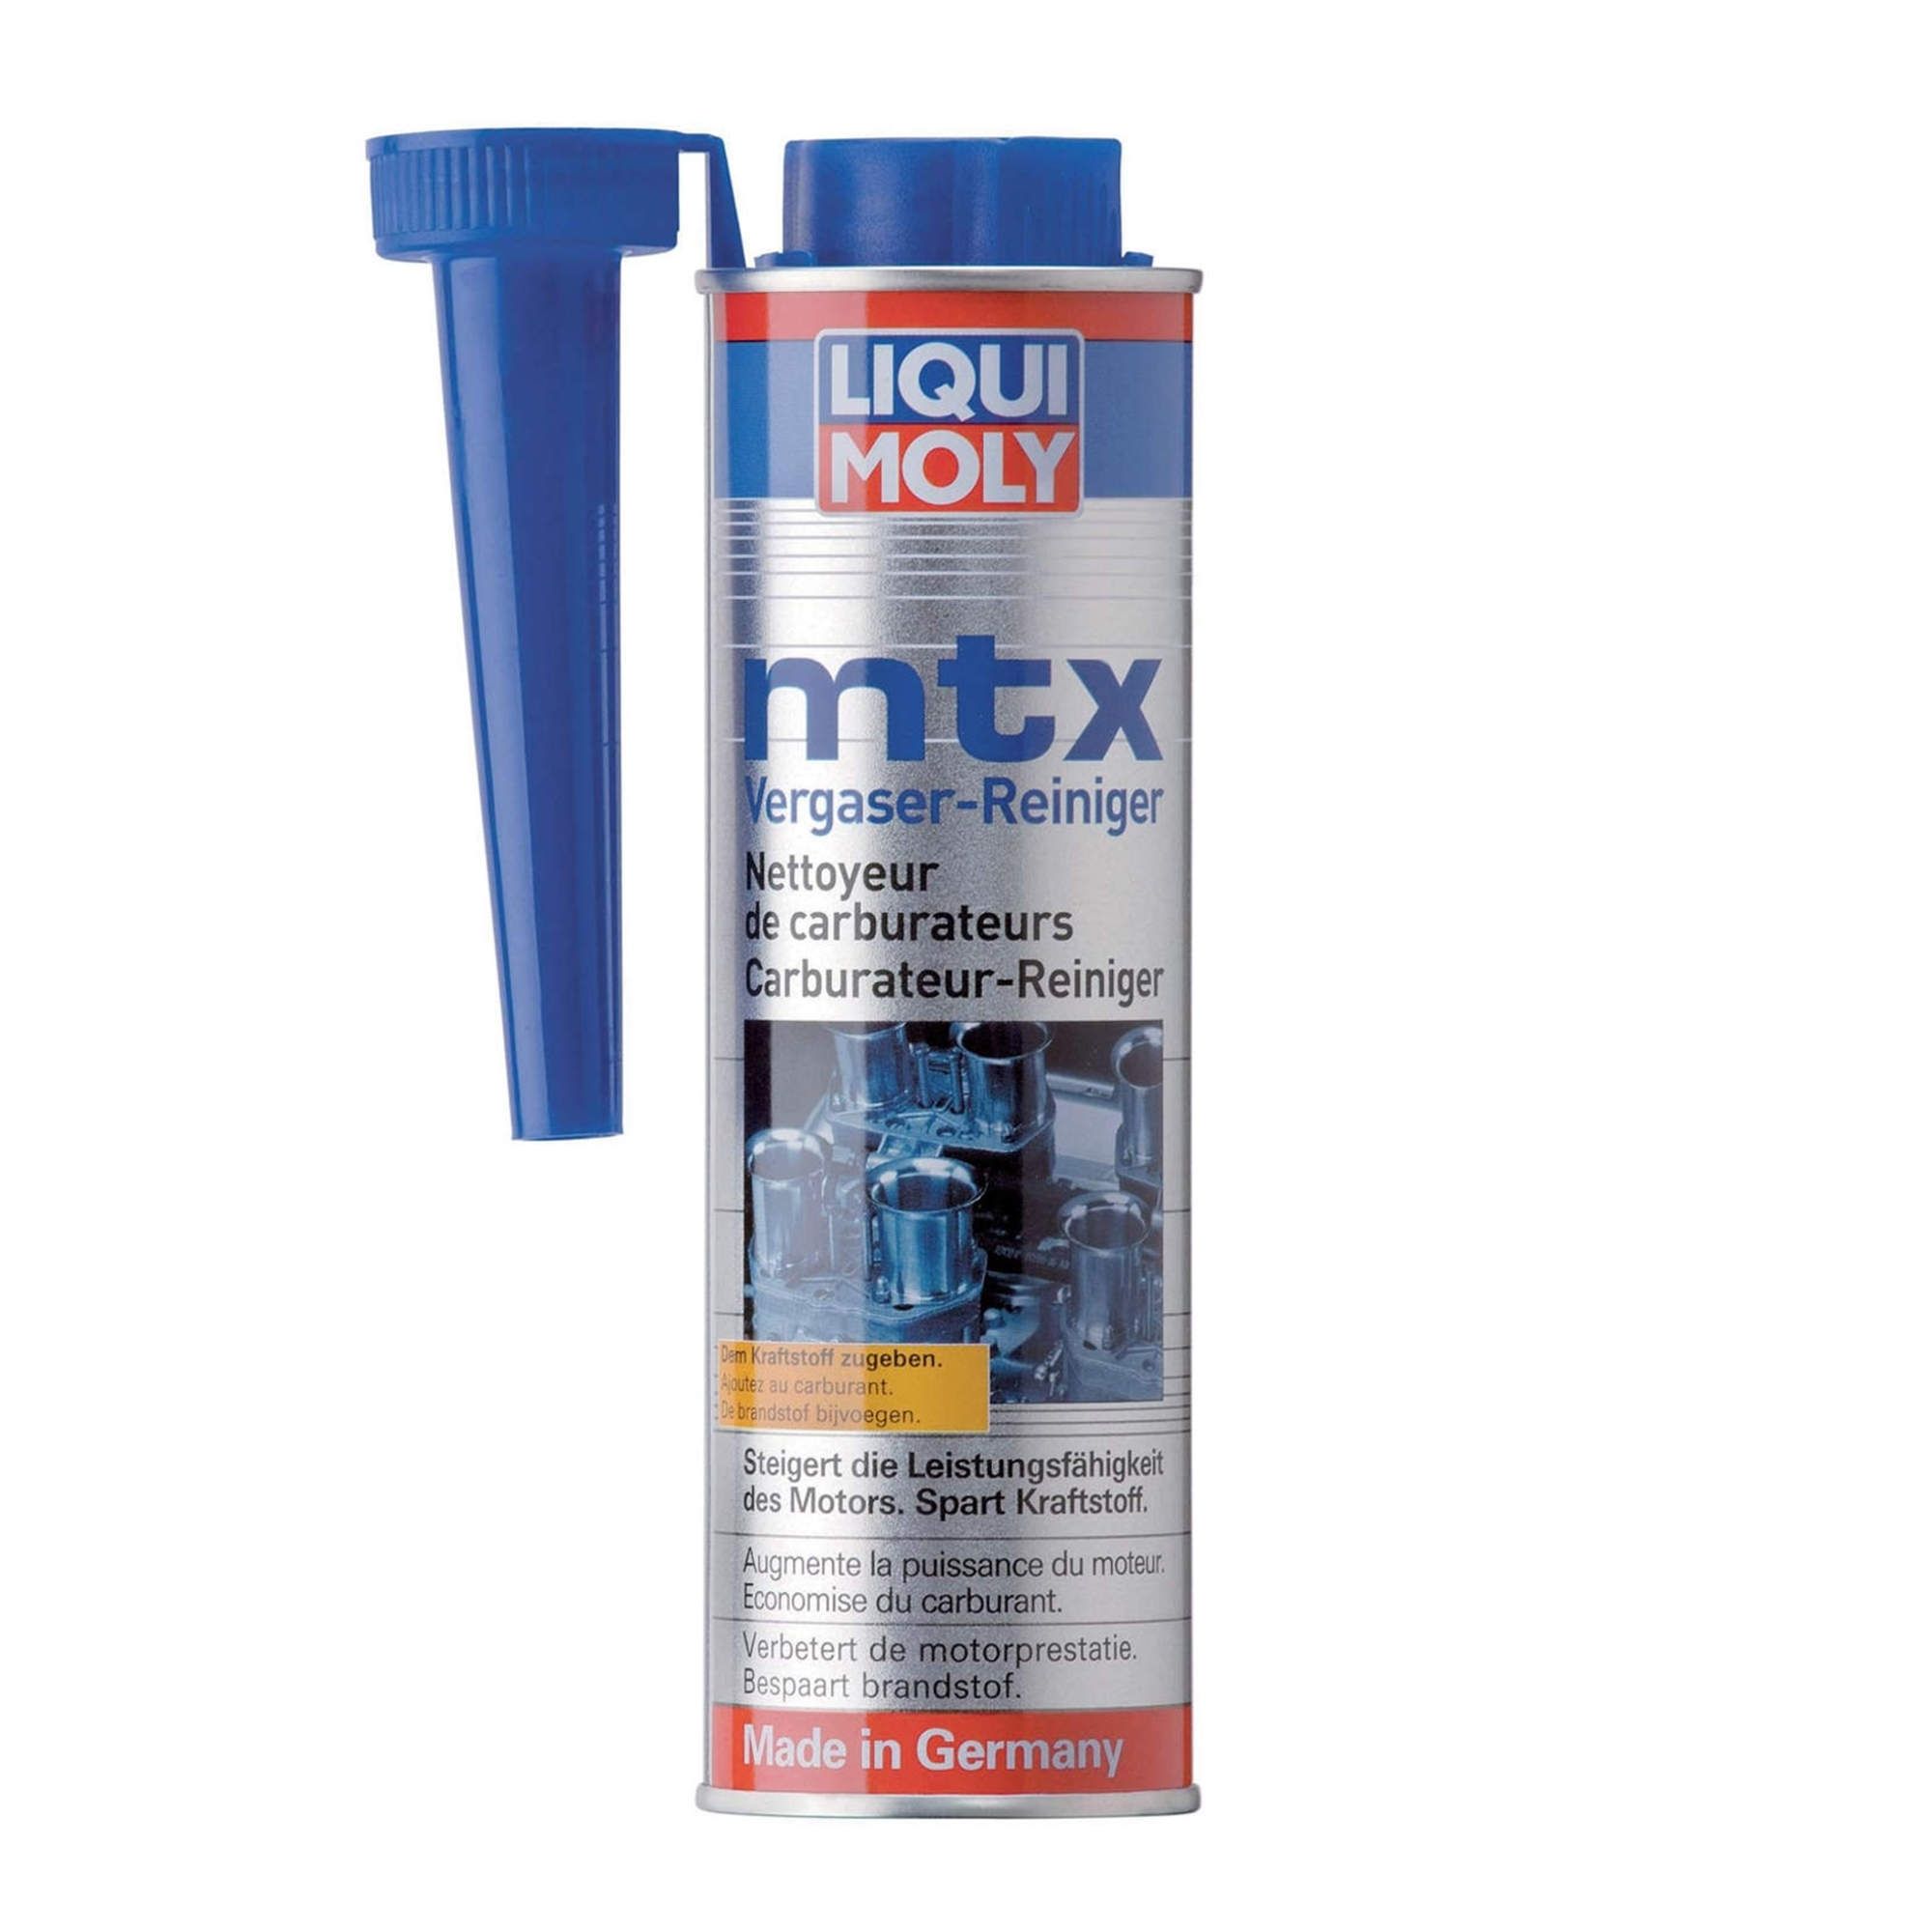 Liqui Moly MTX Vergaser-Reiniger 300 ml bei ATO24 ❗